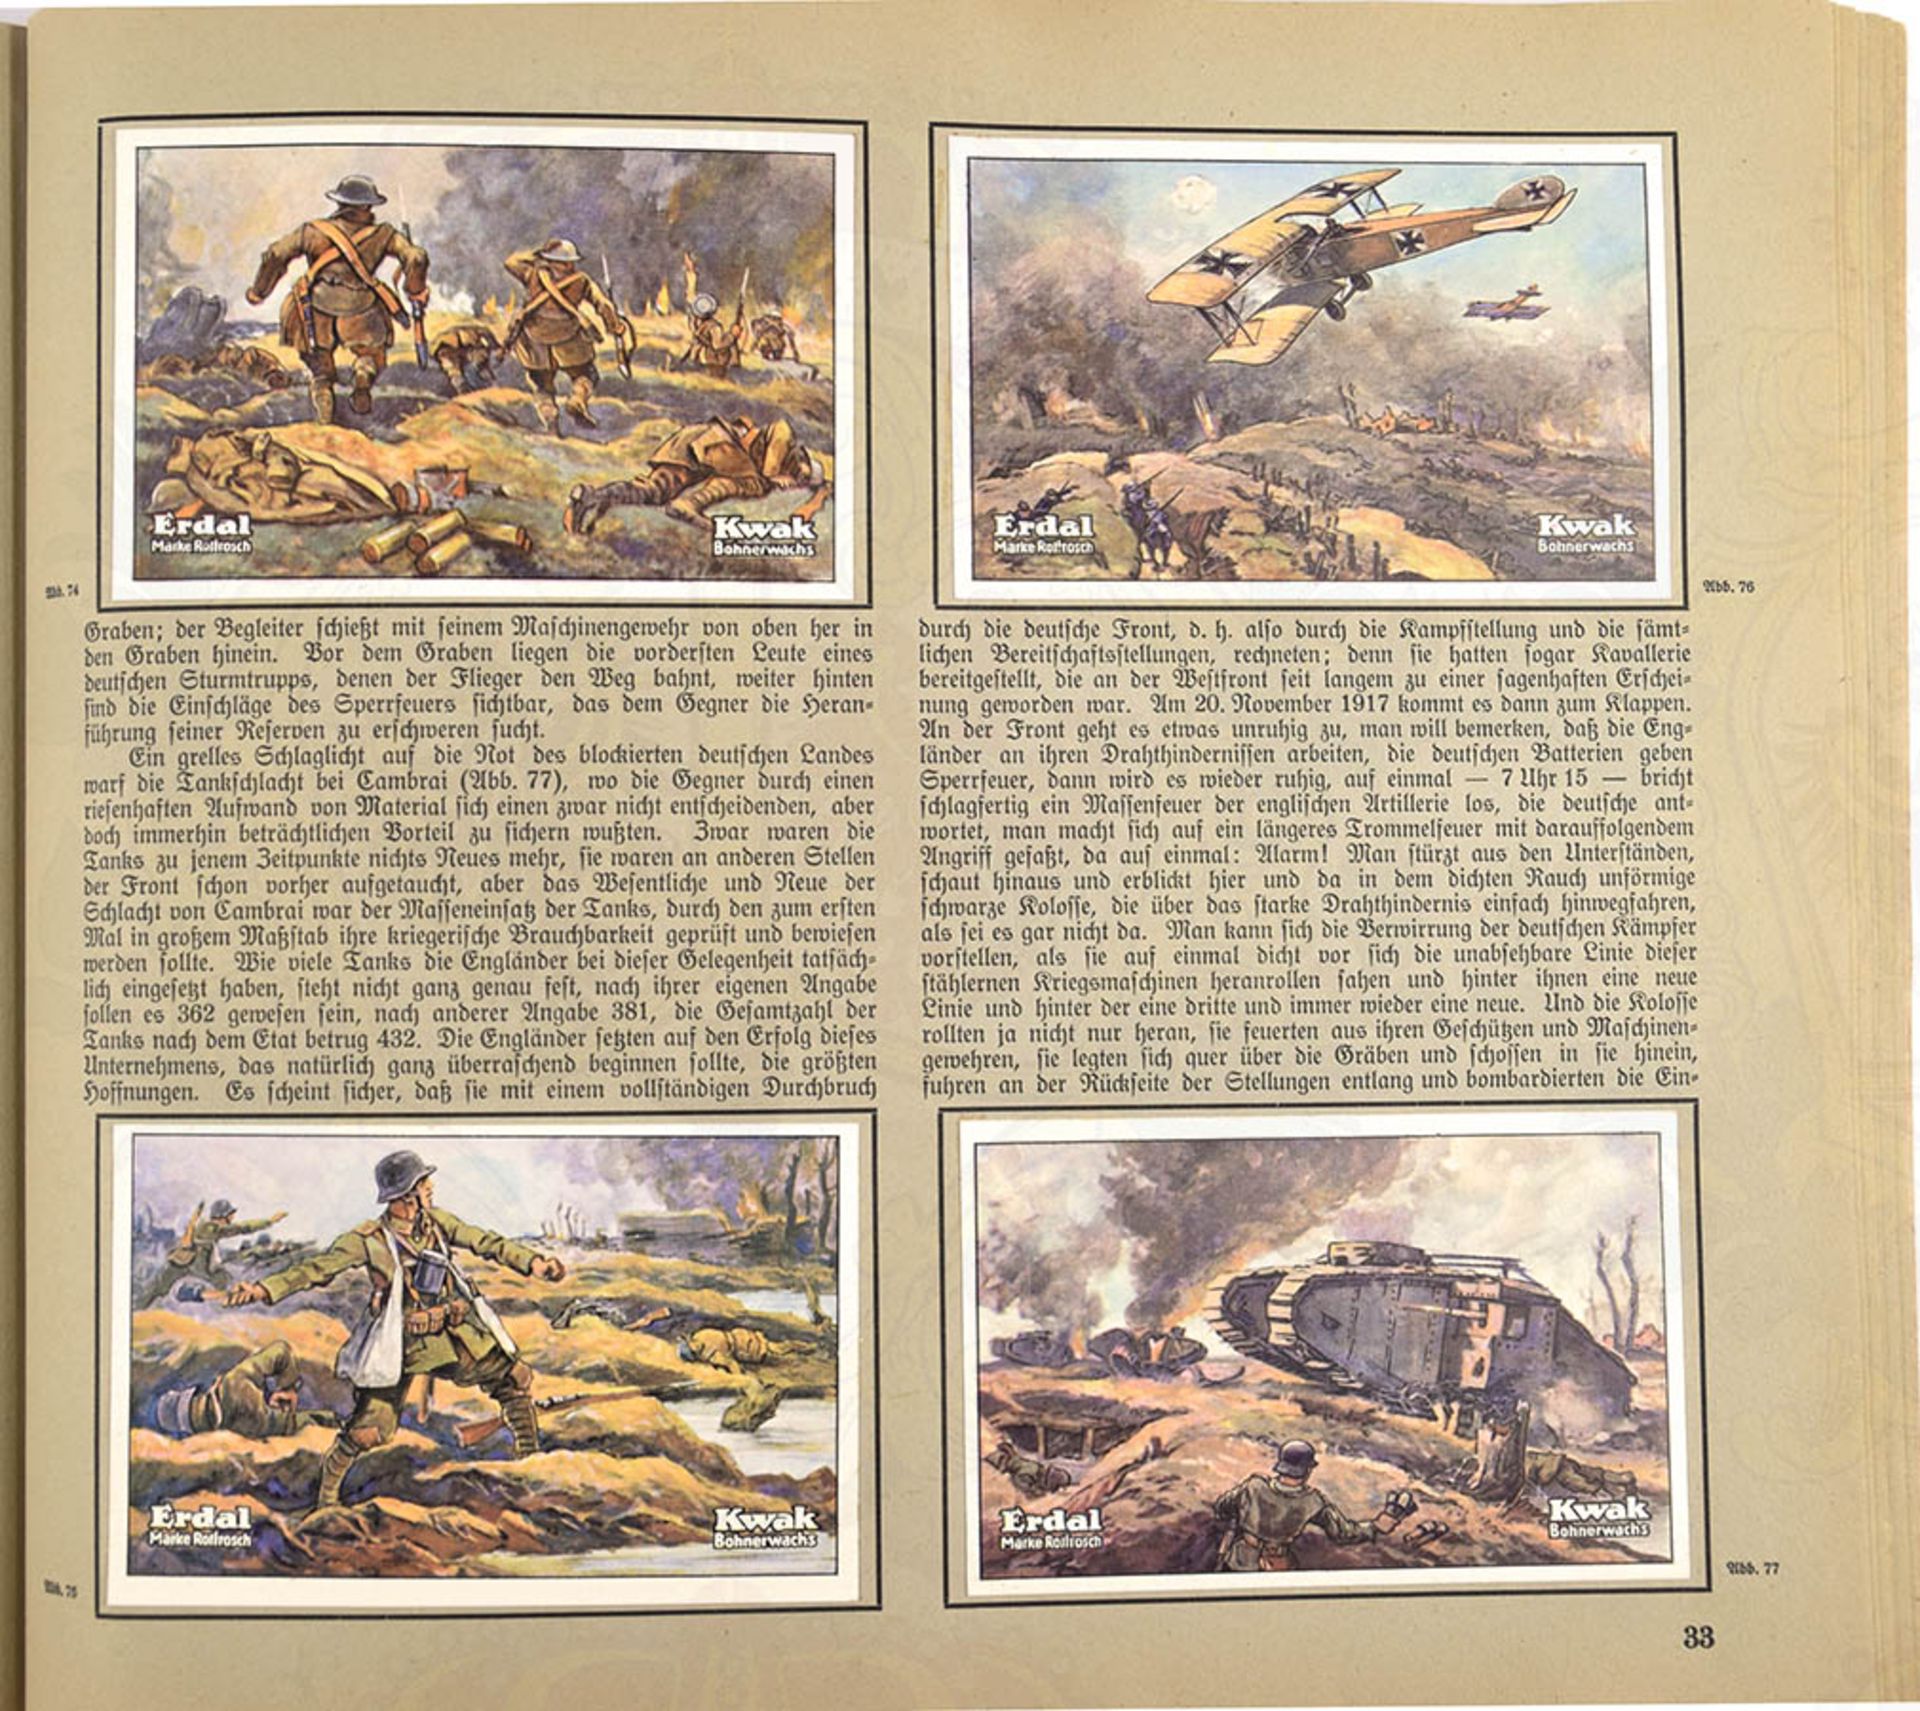 WELTKRIEG 1914/18, Erdal-Kwak 1933, 96 farbige Bilder nach Aquarellen u. Zeichn., kpl., kart. < - Bild 2 aus 2